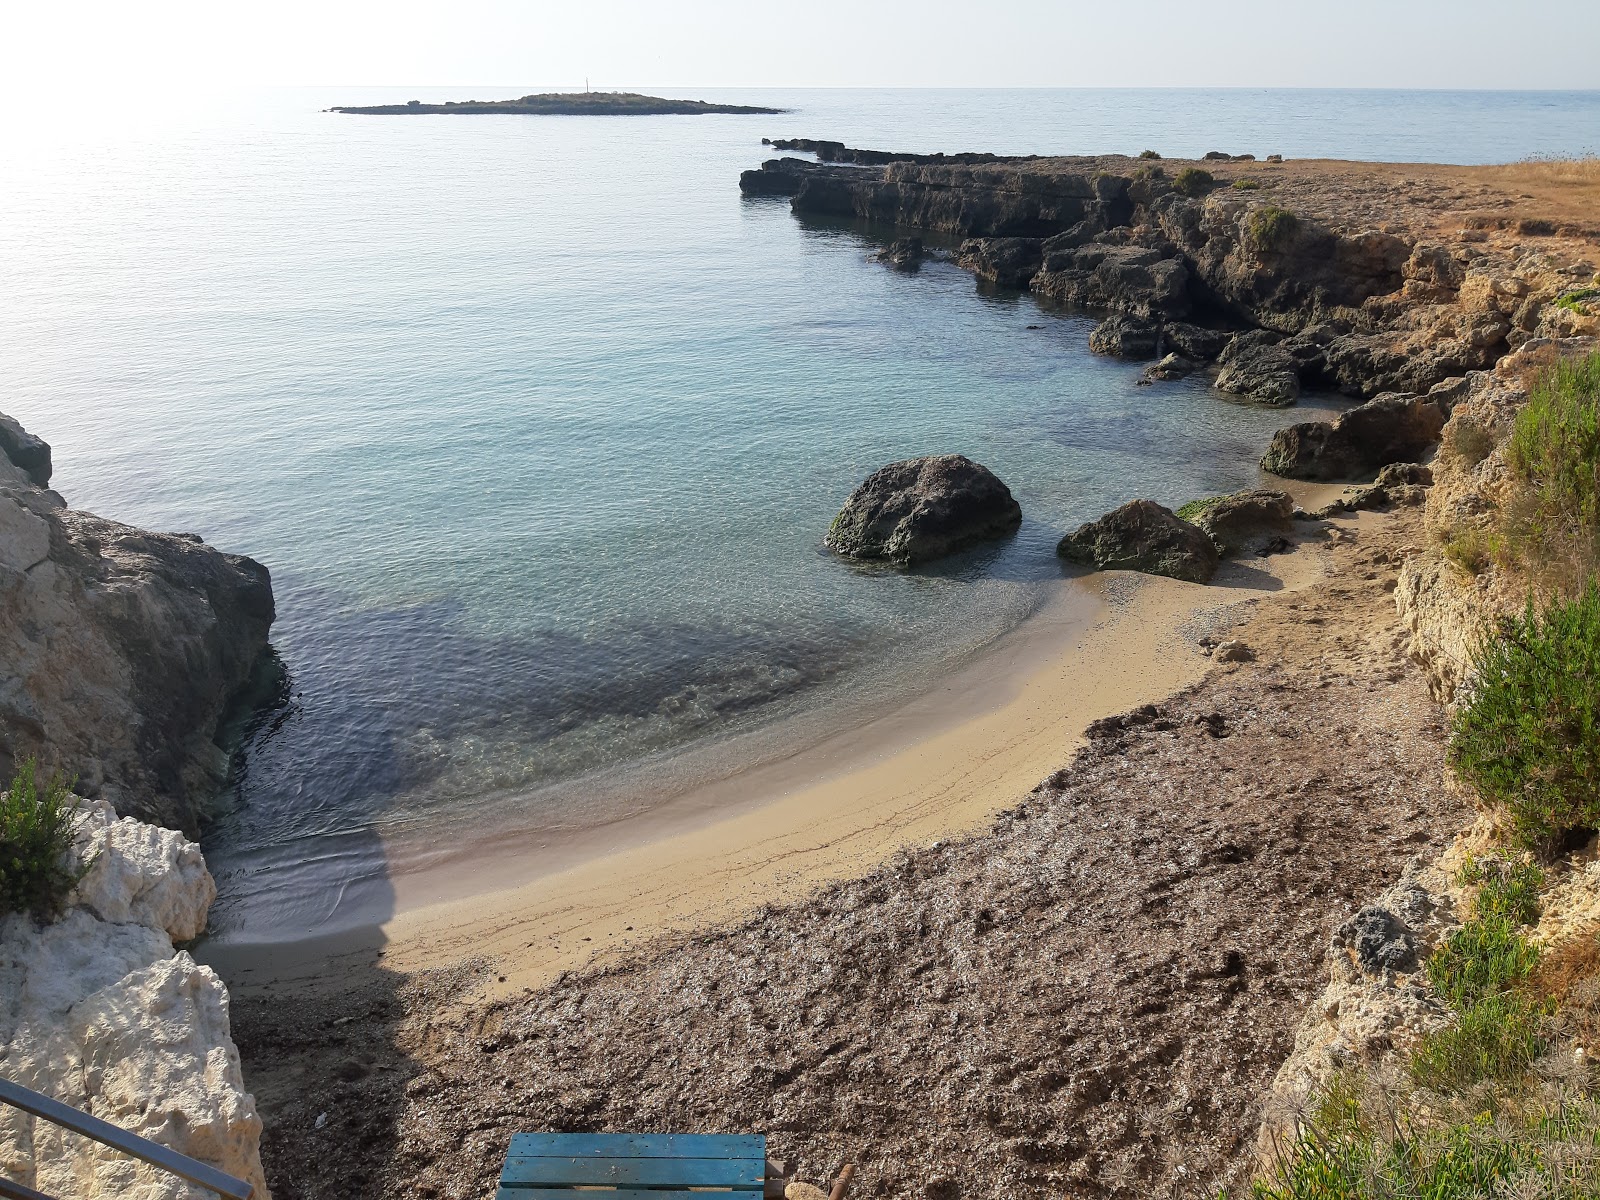 Playa Ognina'in fotoğrafı gri kum yüzey ile